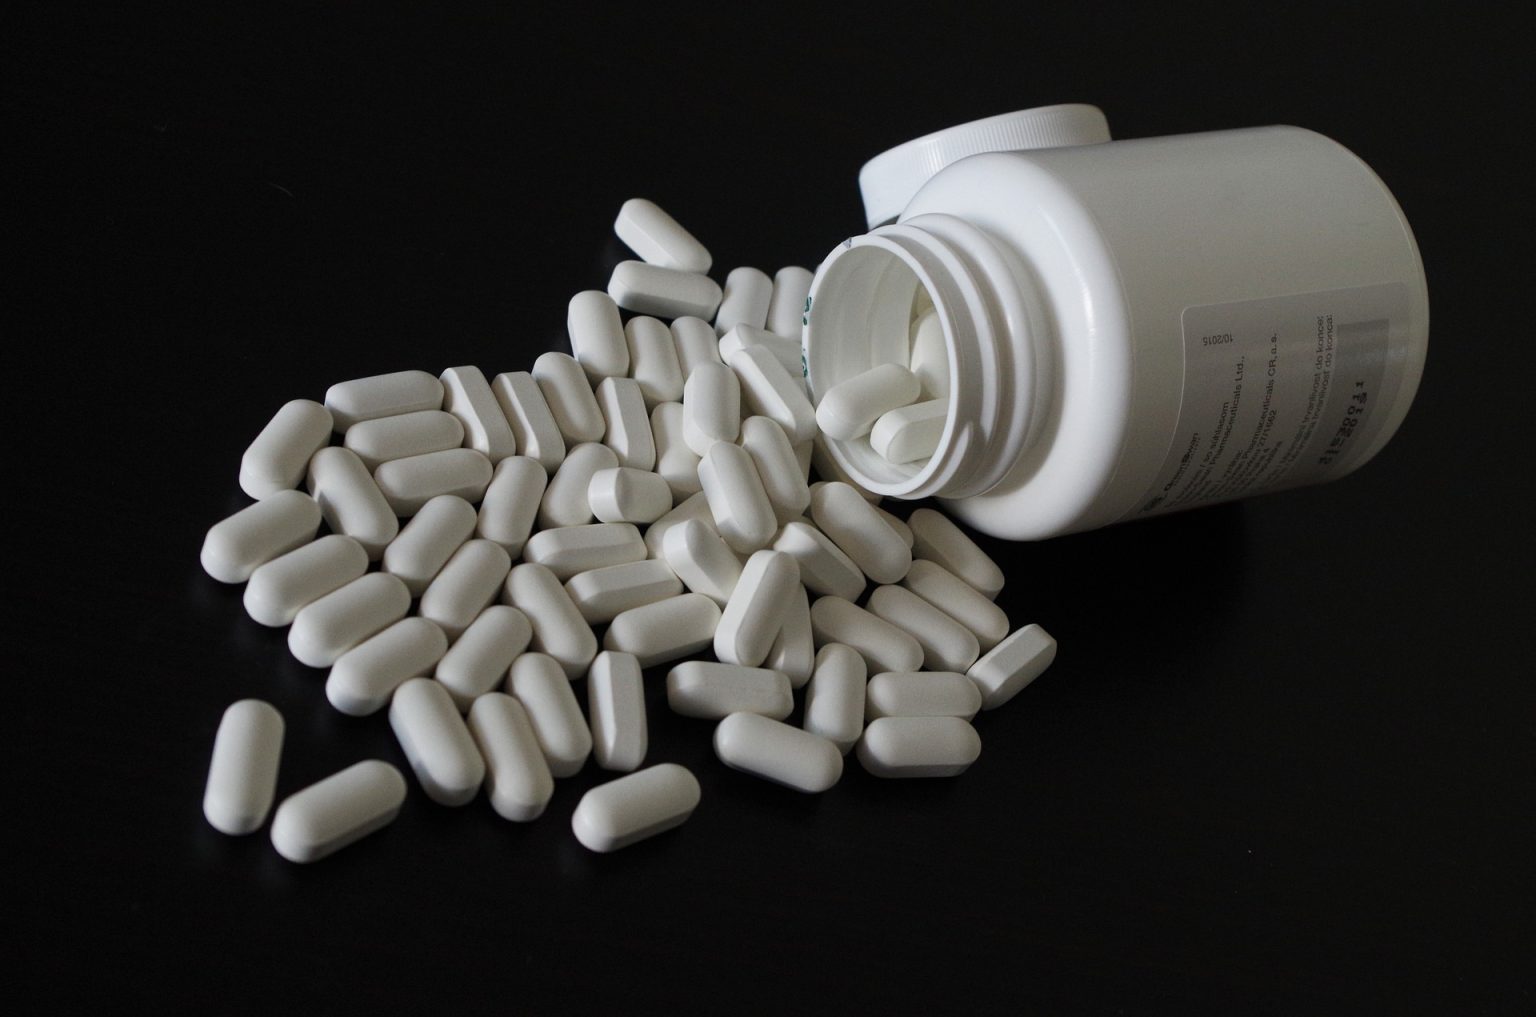 ΕΟΦ: «Καμπανάκι» για 8 ομοιοπαθητικά φάρμακα που κυκλοφορούν από ιστοσελίδα